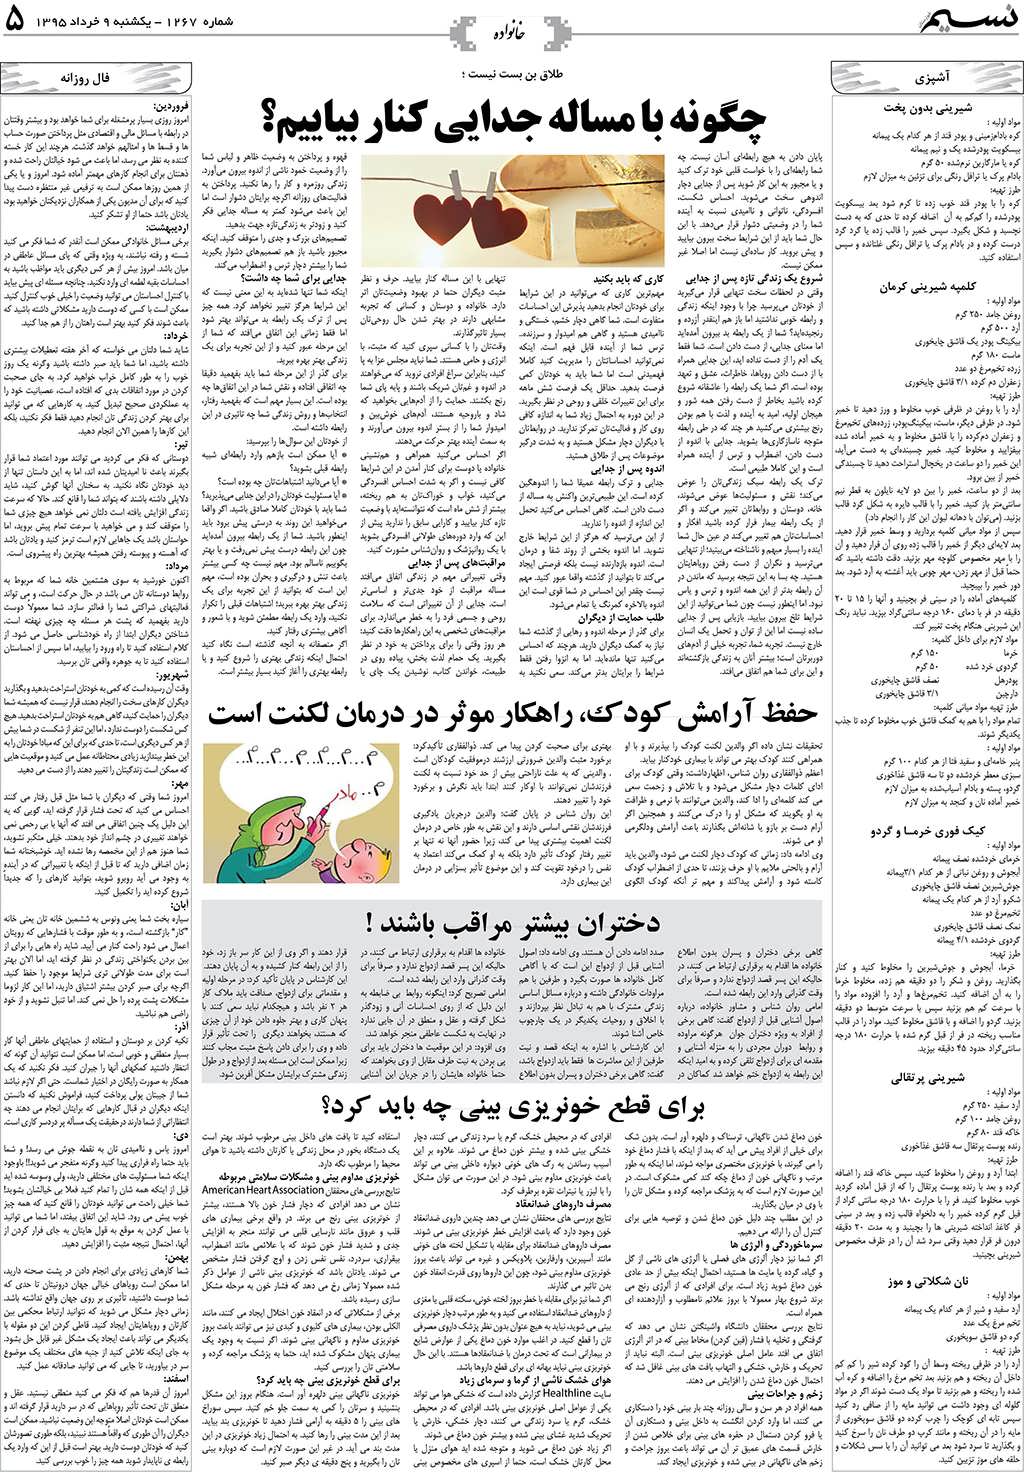 صفحه خانواده روزنامه نسیم شماره 1267